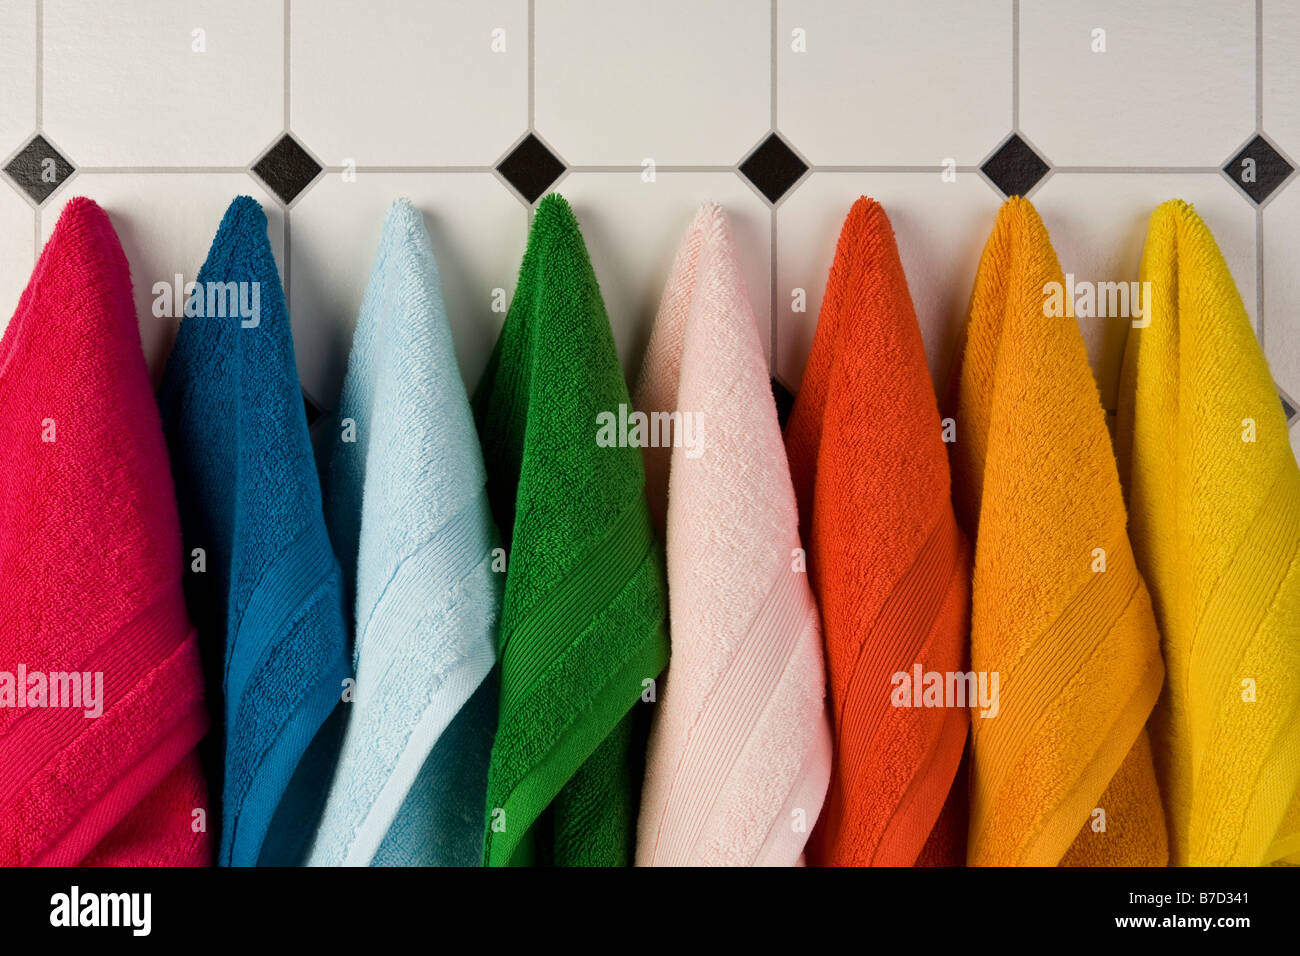 Multi farbige Handtücher hängen in einer Reihe an der Wand Stockfoto